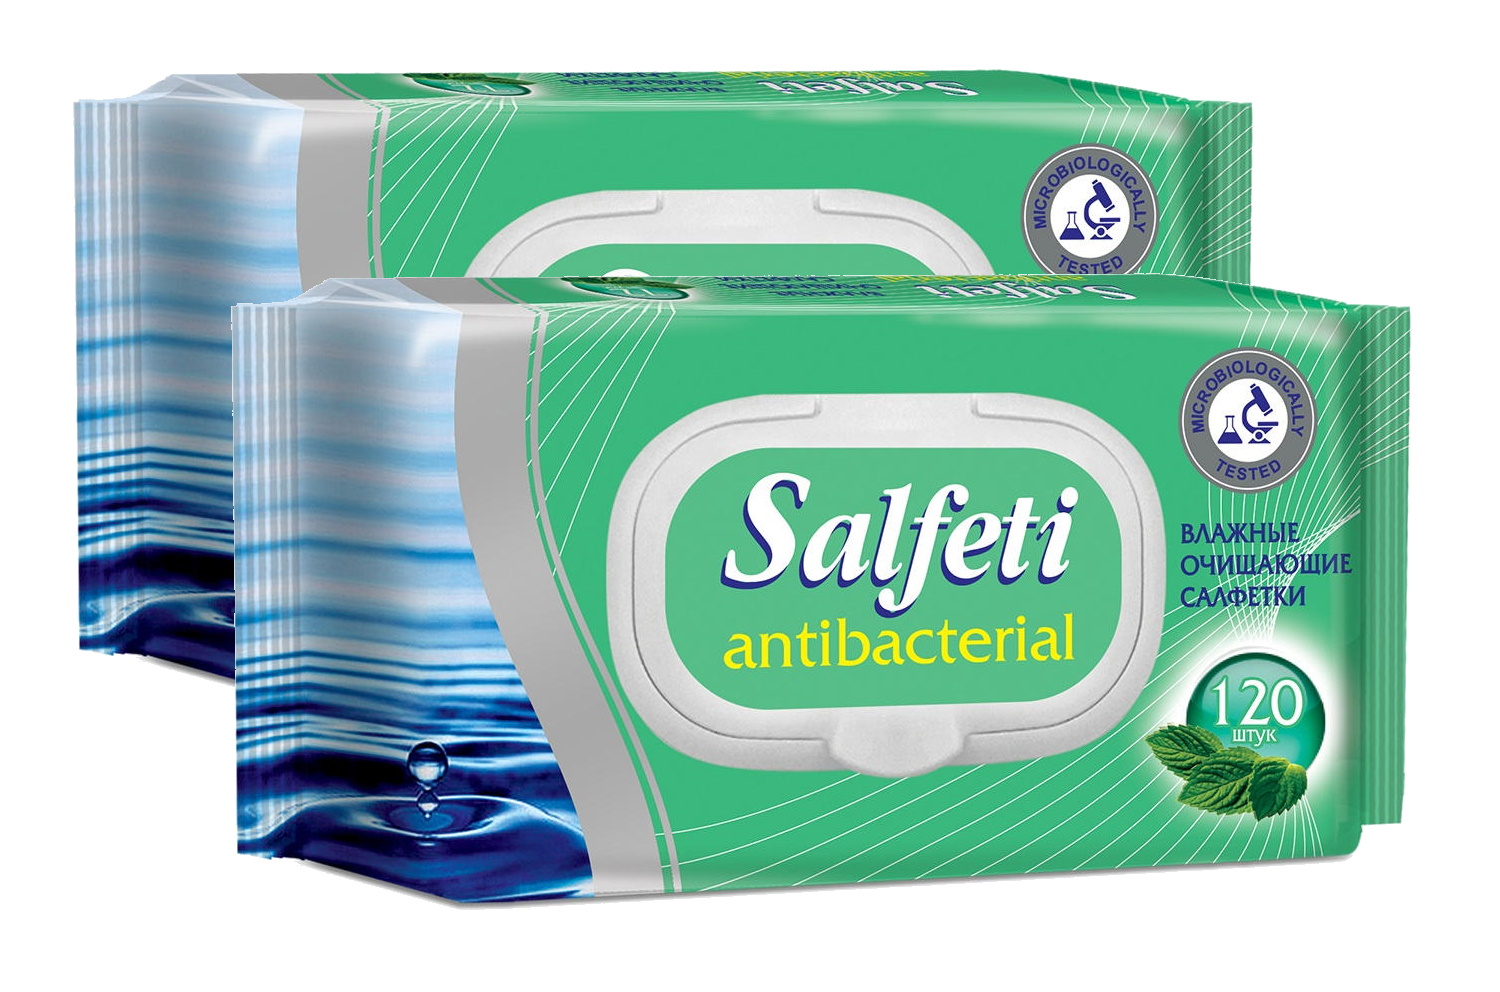 Купить Влажные салфетки Salfeti antibac №120 антибактериальные с клапаном в упаковке 2 шт